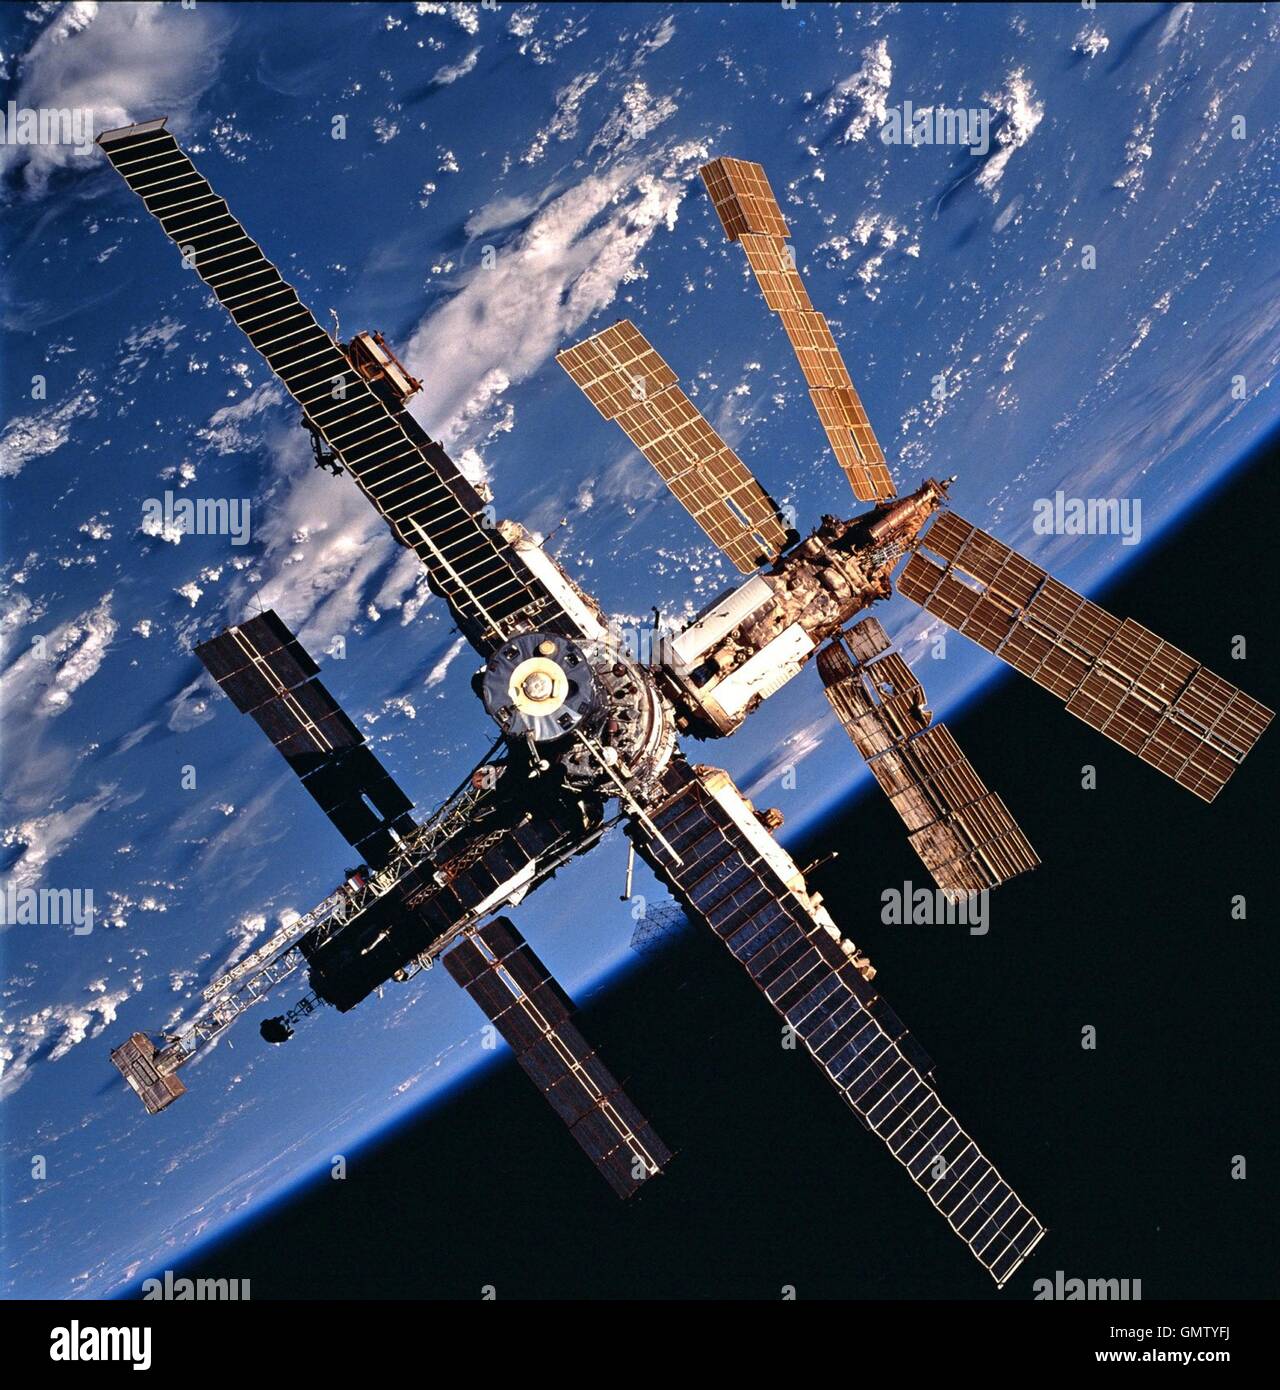 Ansicht der russischen Raumstation Backdropped gegen eine Wolke bedeckte Erde fotografierte das Space Shuttle Atlantis nach dem Abschluss der gemeinsamen Docking-Aktivitäten zwischen Mir-24 und STS-86 Mannschaften 5. Oktober 1997 bei einem Rundflug. Eines der Solargenerator Panels des Spektr-Moduls zeigt Schäden, die während des Aufpralls eines russischen unbemannte Progress erneute Lieferung Schiffes die 25. Juni 1997 mit der Raumstation kollidierte. Mir nähert sich das Ende seiner Existenz als Russland plant, das Handwerk aus der Umlaufbahn Ende Februar 2001 in einem kontrollierten Absturz der Raumstation Saf Dump zu steuern Stockfoto